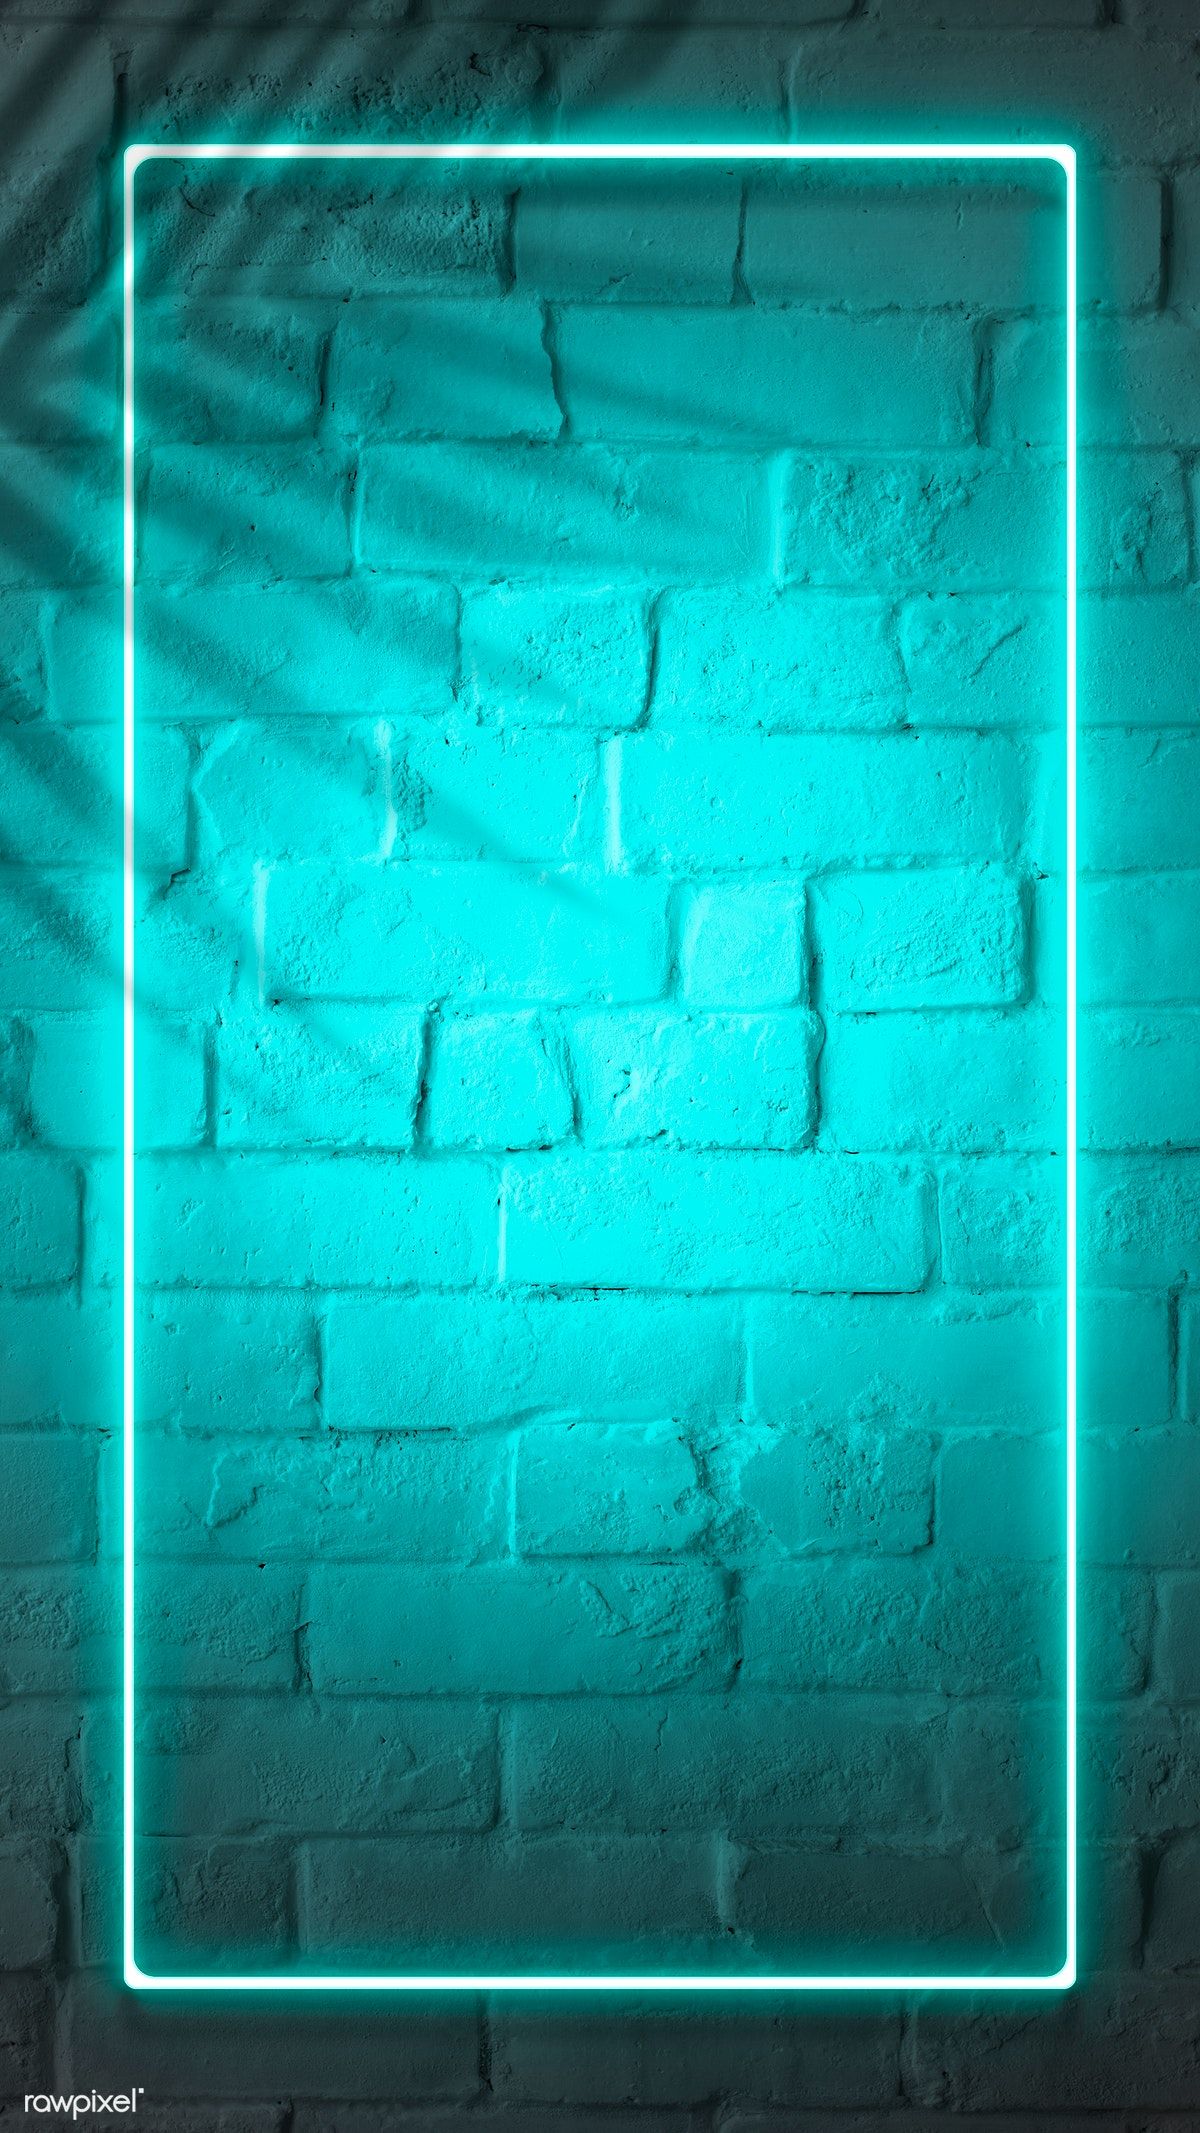 Neon light wallpaper ideas. neon light wallpaper, lit wallpaper, wallpaper